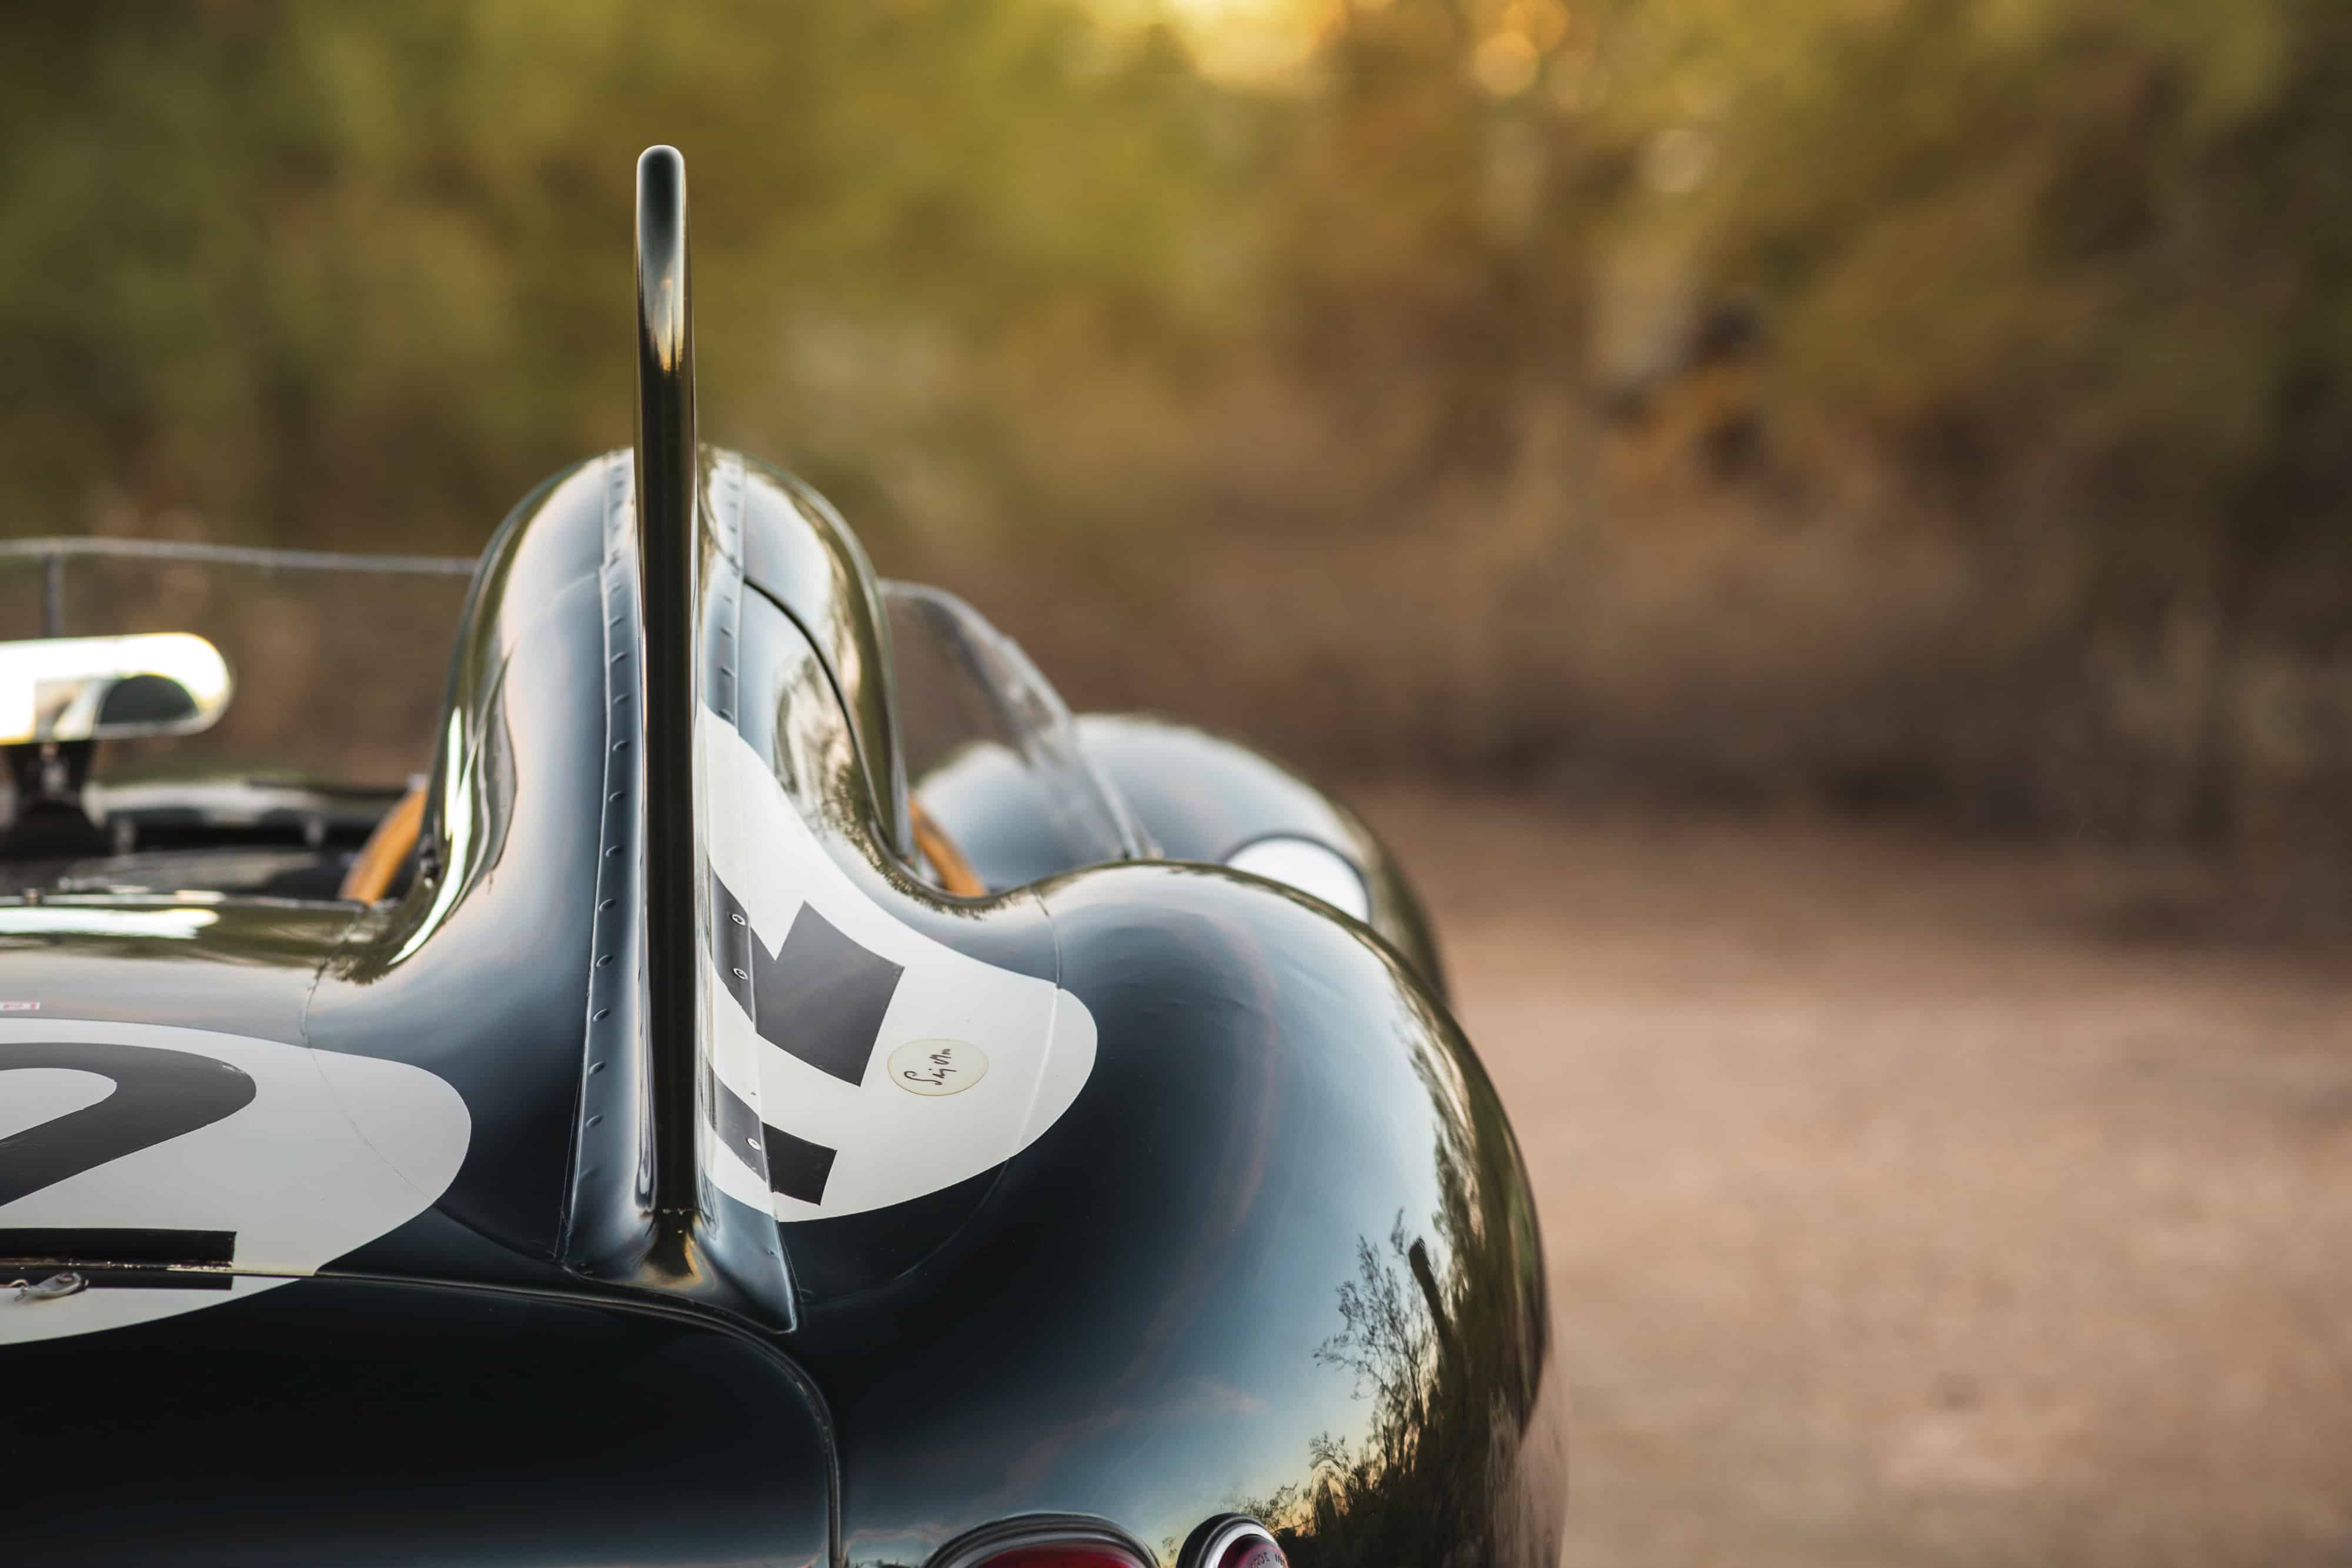 Ex-Moss 1954 Jaguar D-type announced for 2018 Sotheby's auction